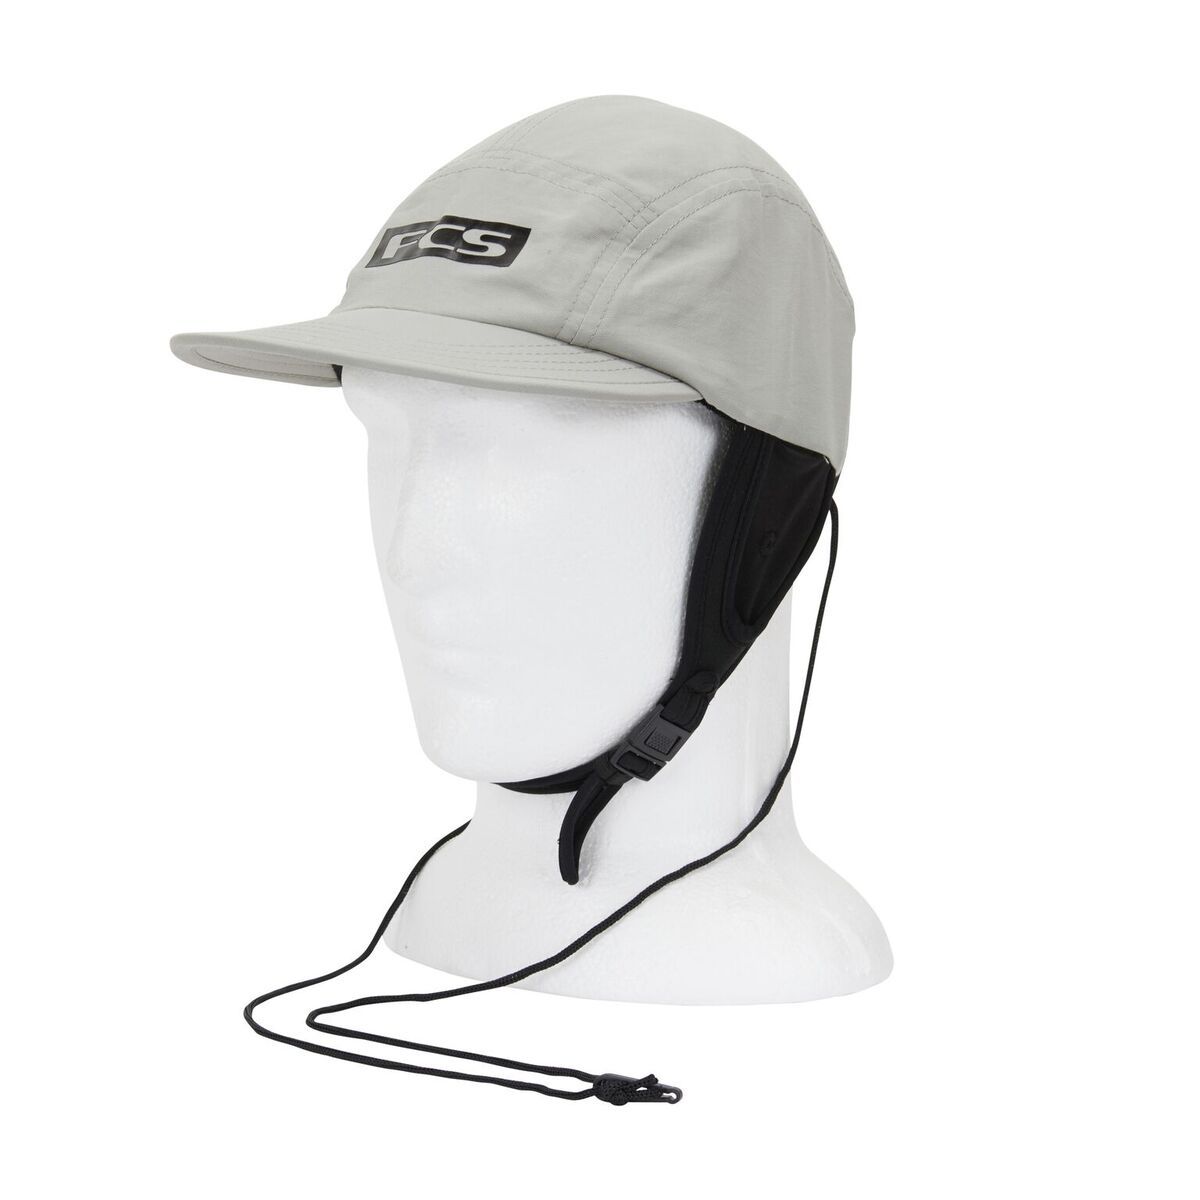 Essential Surf Bucket Hat - FCS